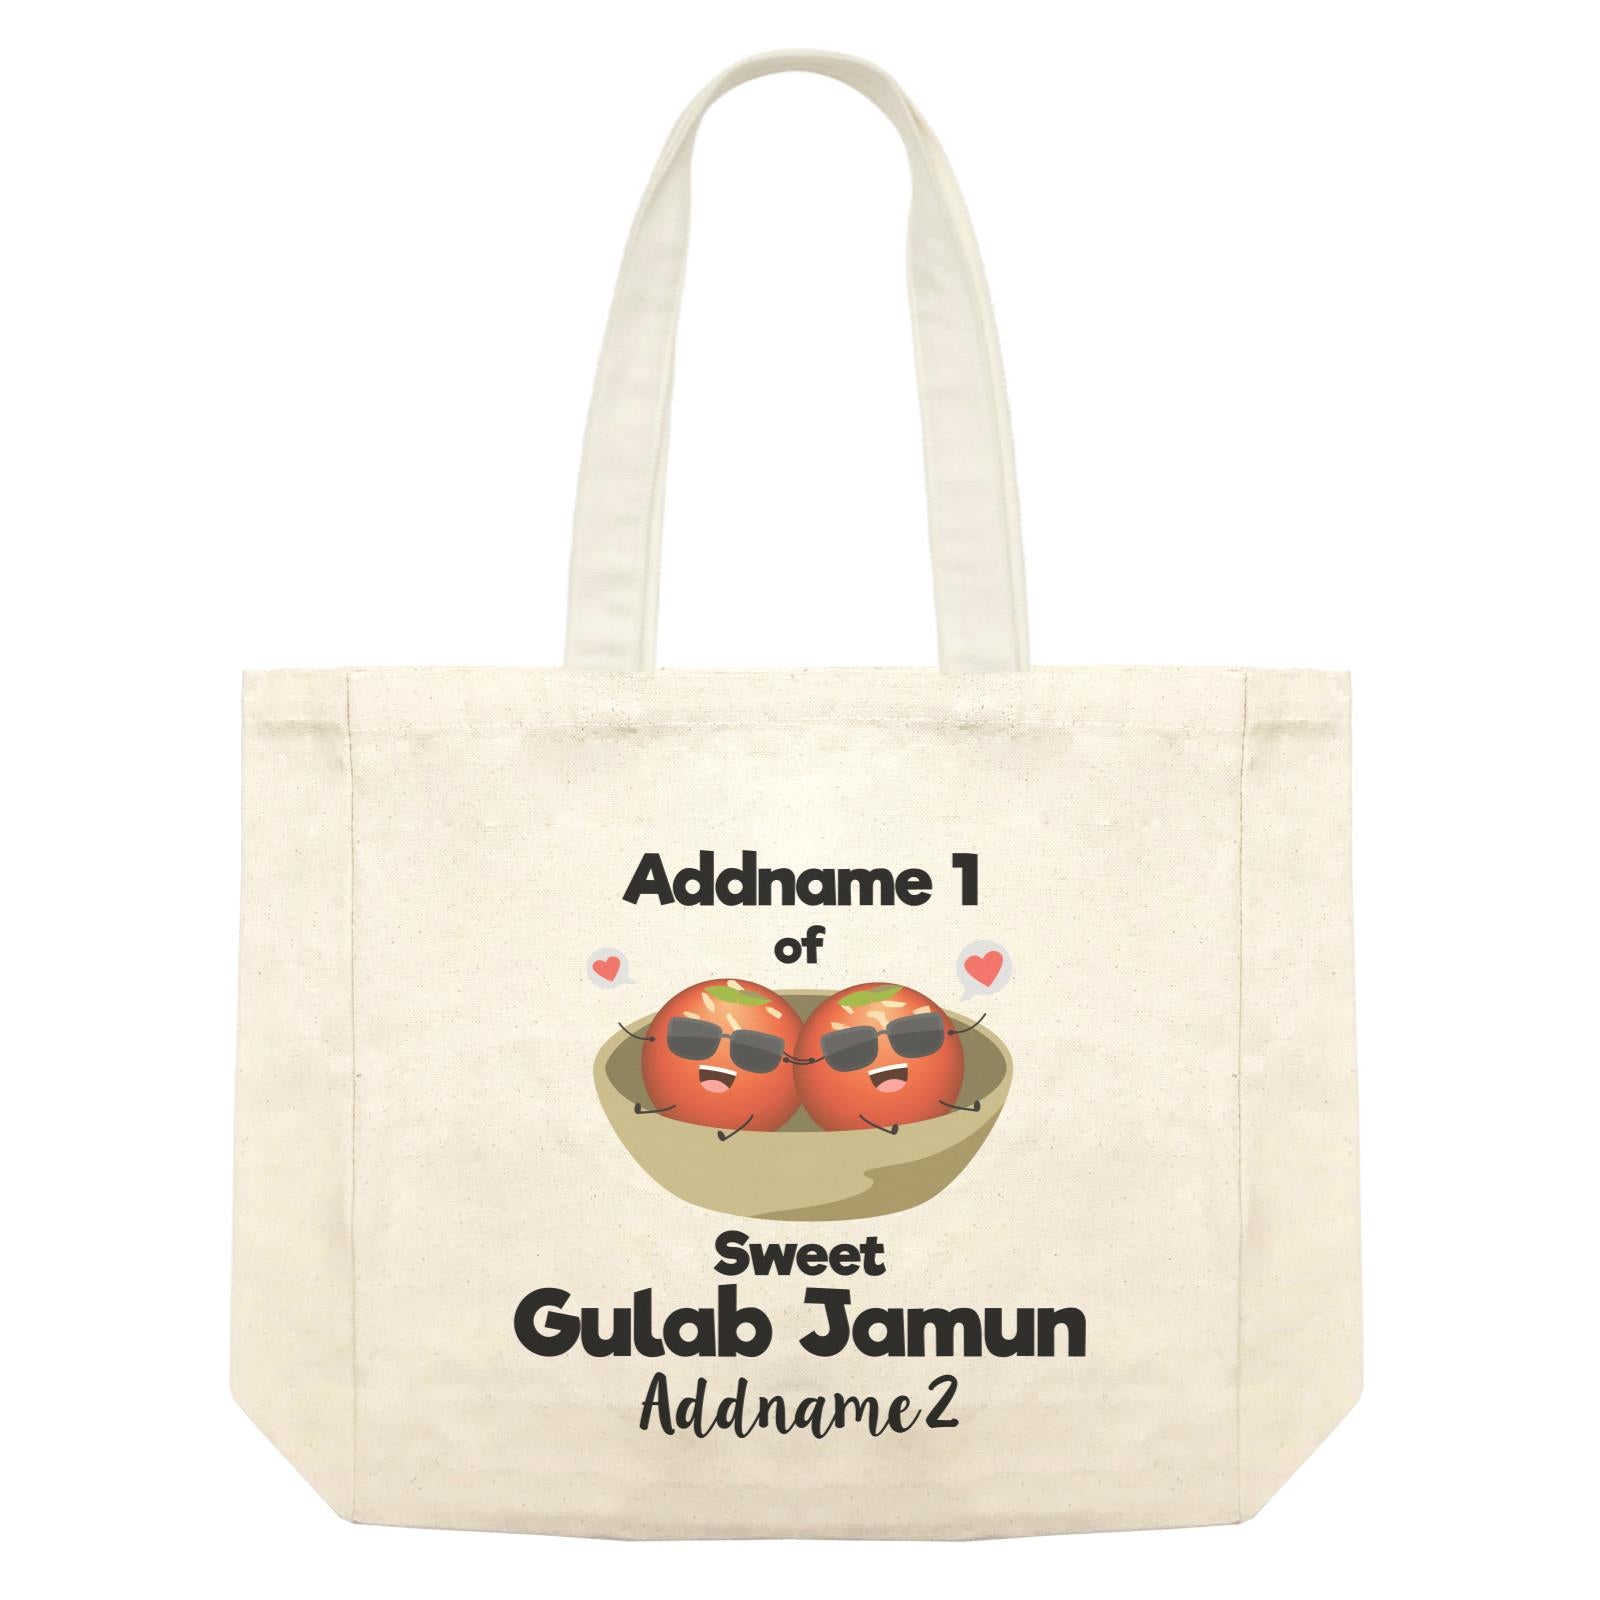 Addname 1 of Sweet Gulab Jamun Addname 2 Shopping Bag